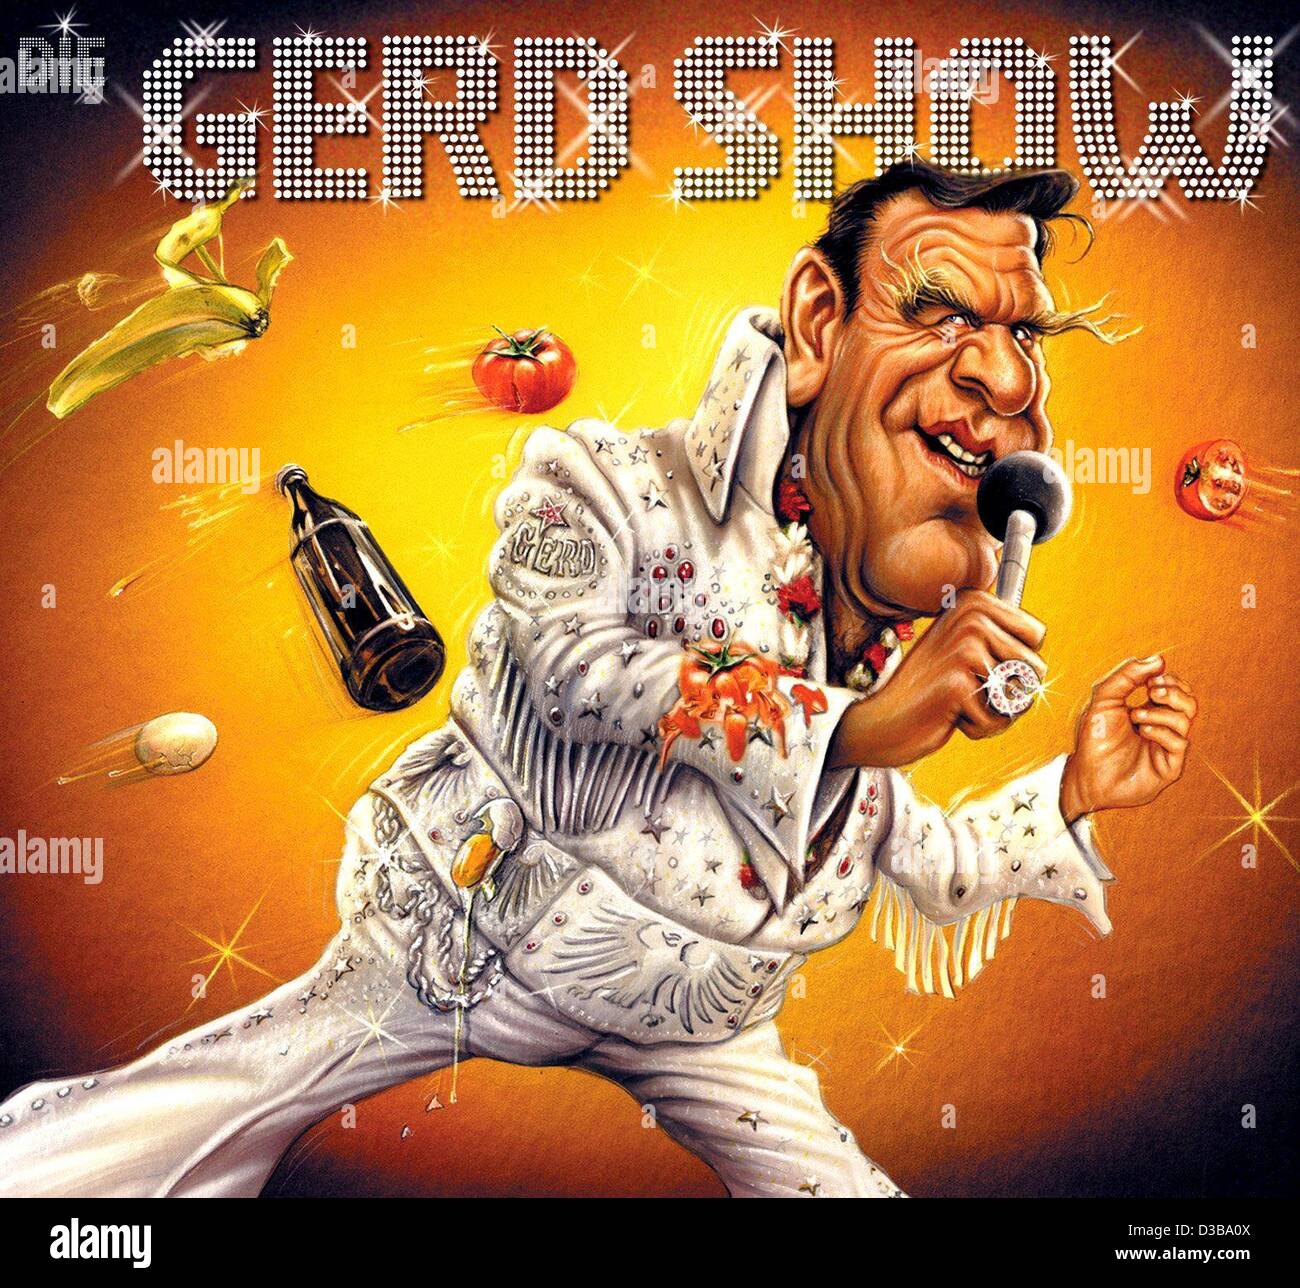 (Dpa) - Il coperchio del nuovo 'Gerd Show' album (graphic design da Bernhard Prinz) è presentato in Duesseldorf, Germania, 27 novembre 2002. Il nuovo album, che affiora divertimento presso il cancelliere tedesco, sarà rilasciato il 2 dicembre. L'album comprende la "tassa song' ('Steuersong'), che attualmente conduce t Foto Stock